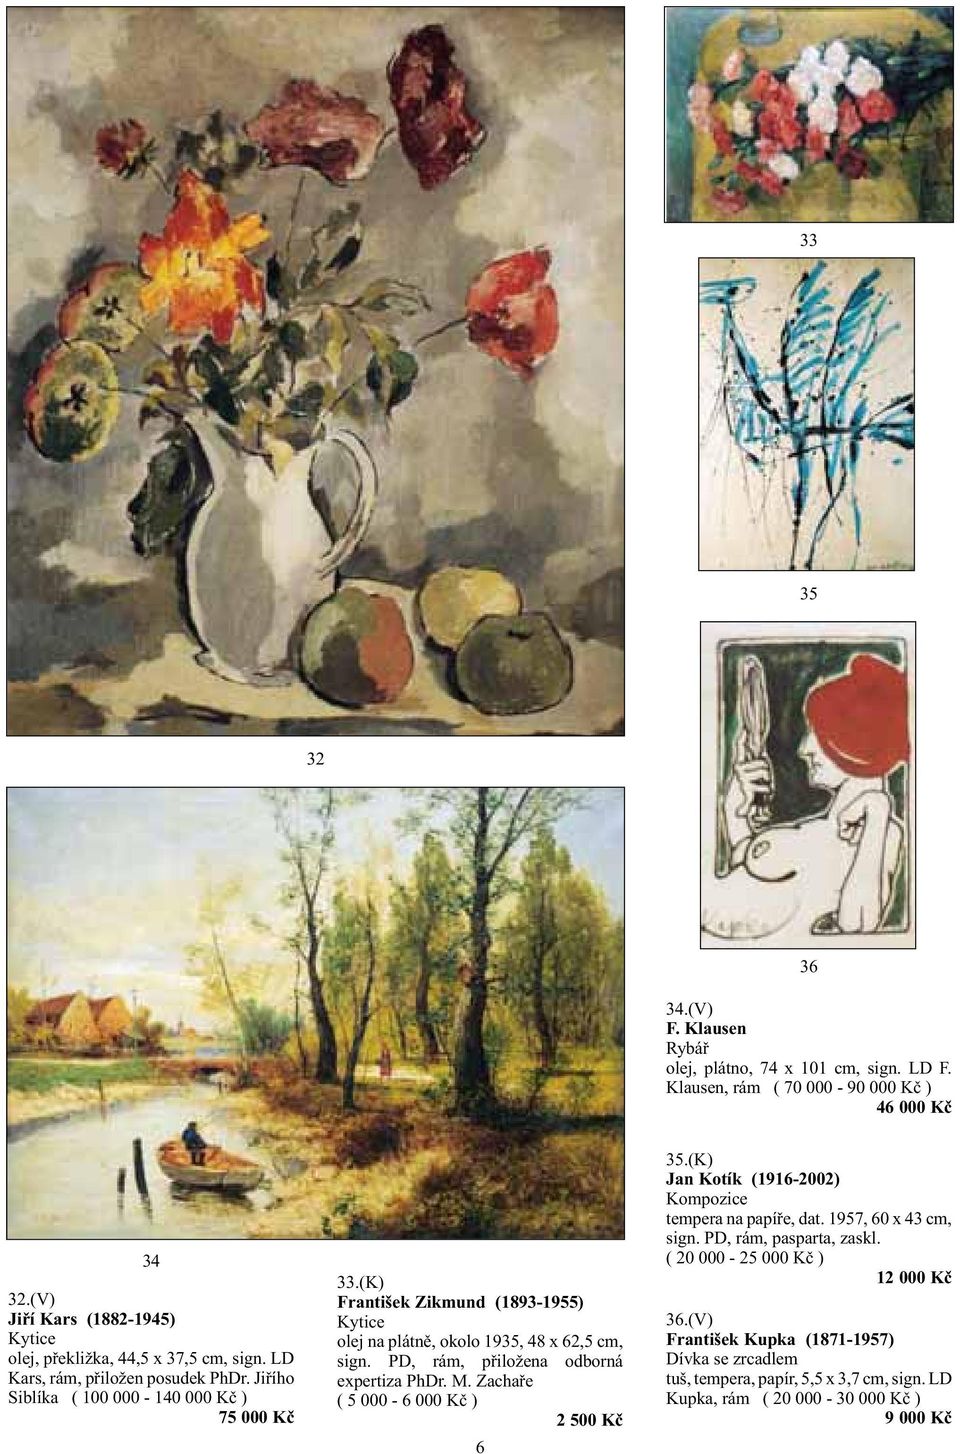 (K) František Zikmund (1893-1955) Kytice olej na plátně, okolo 1935, 48 x 62,5 cm, sign. PD, rám, přiložena odborná expertiza PhDr. M. Zachaře ( 5 000-6 000 Kč ) 2 500 Kč 6 35.